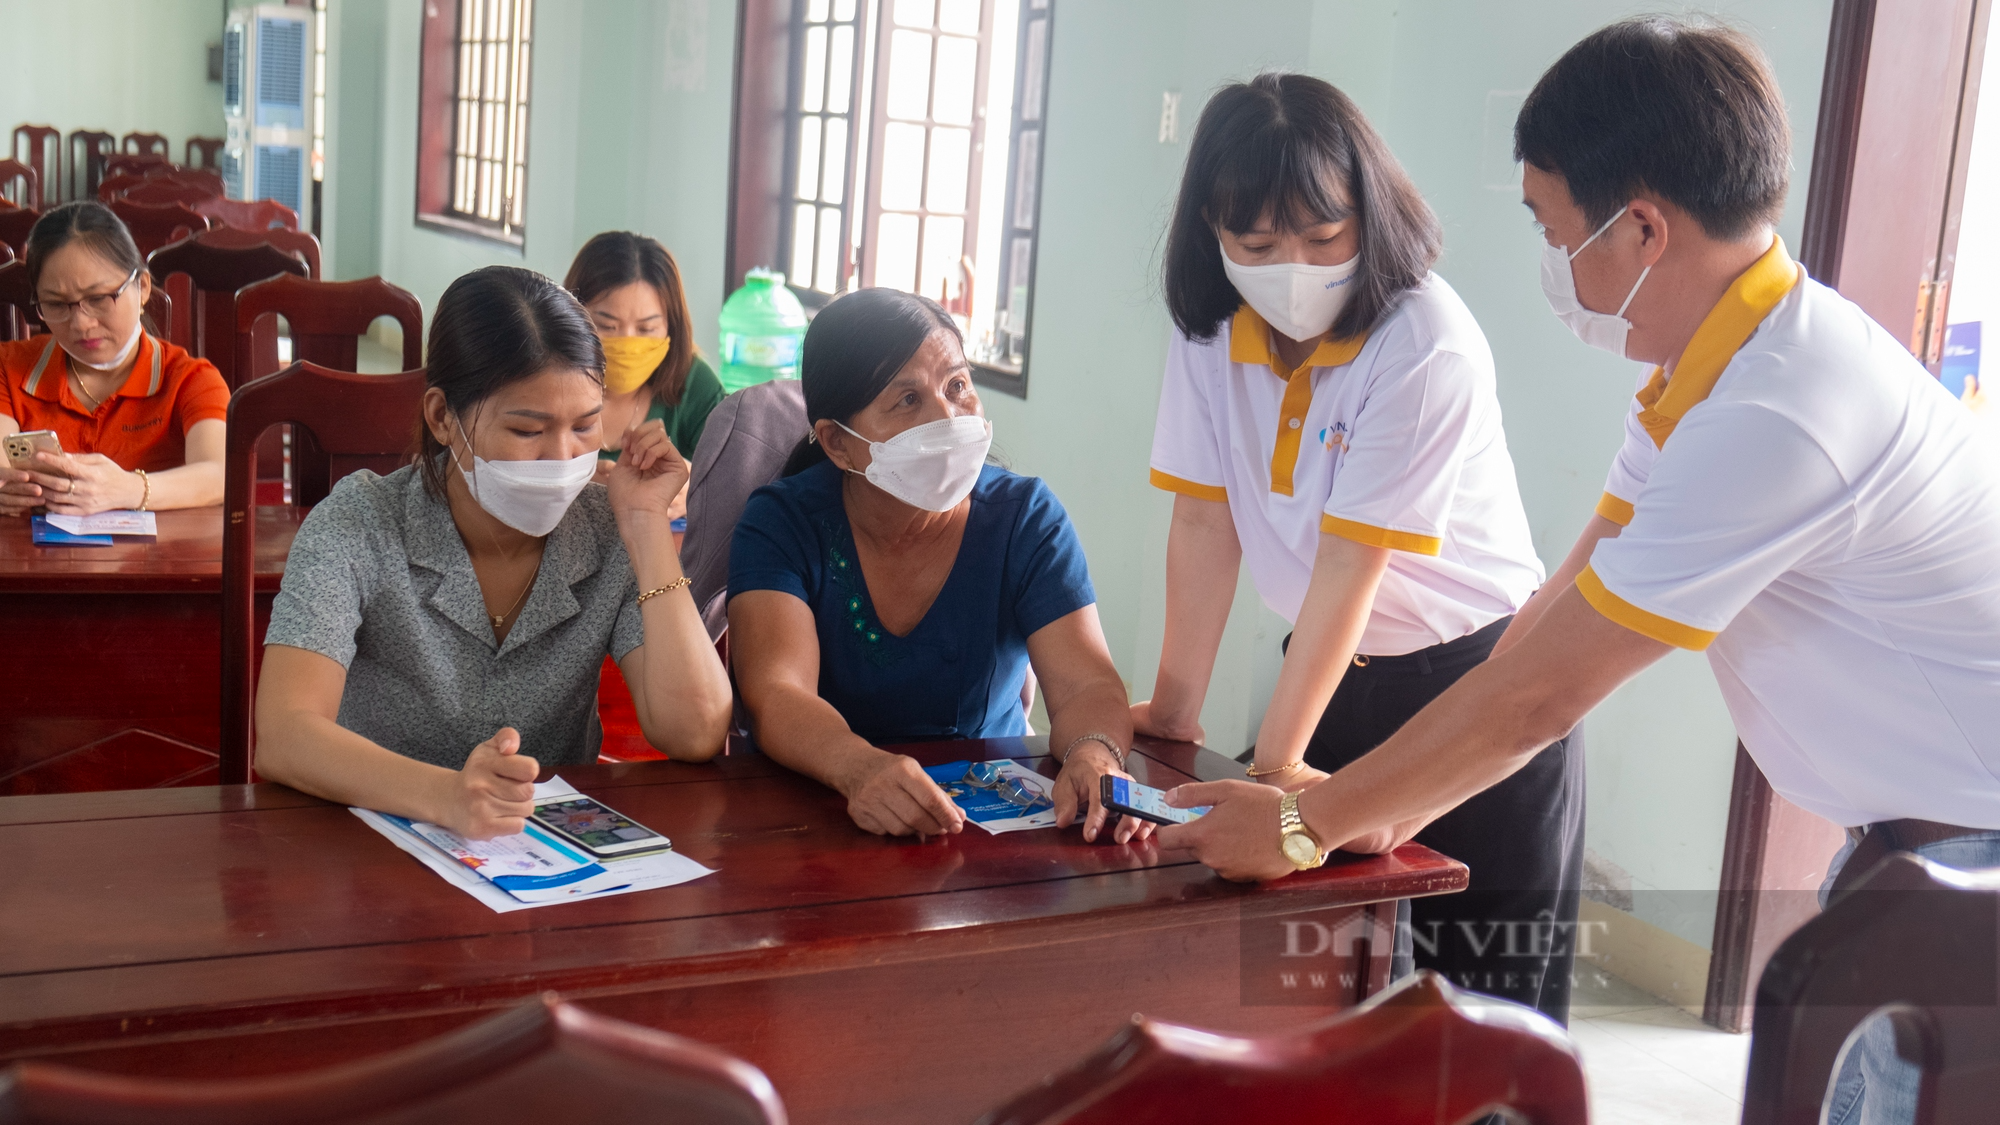 Nông dân ở Quảng Nam đưa công nghệ số vào cuộc sống - Ảnh 10.